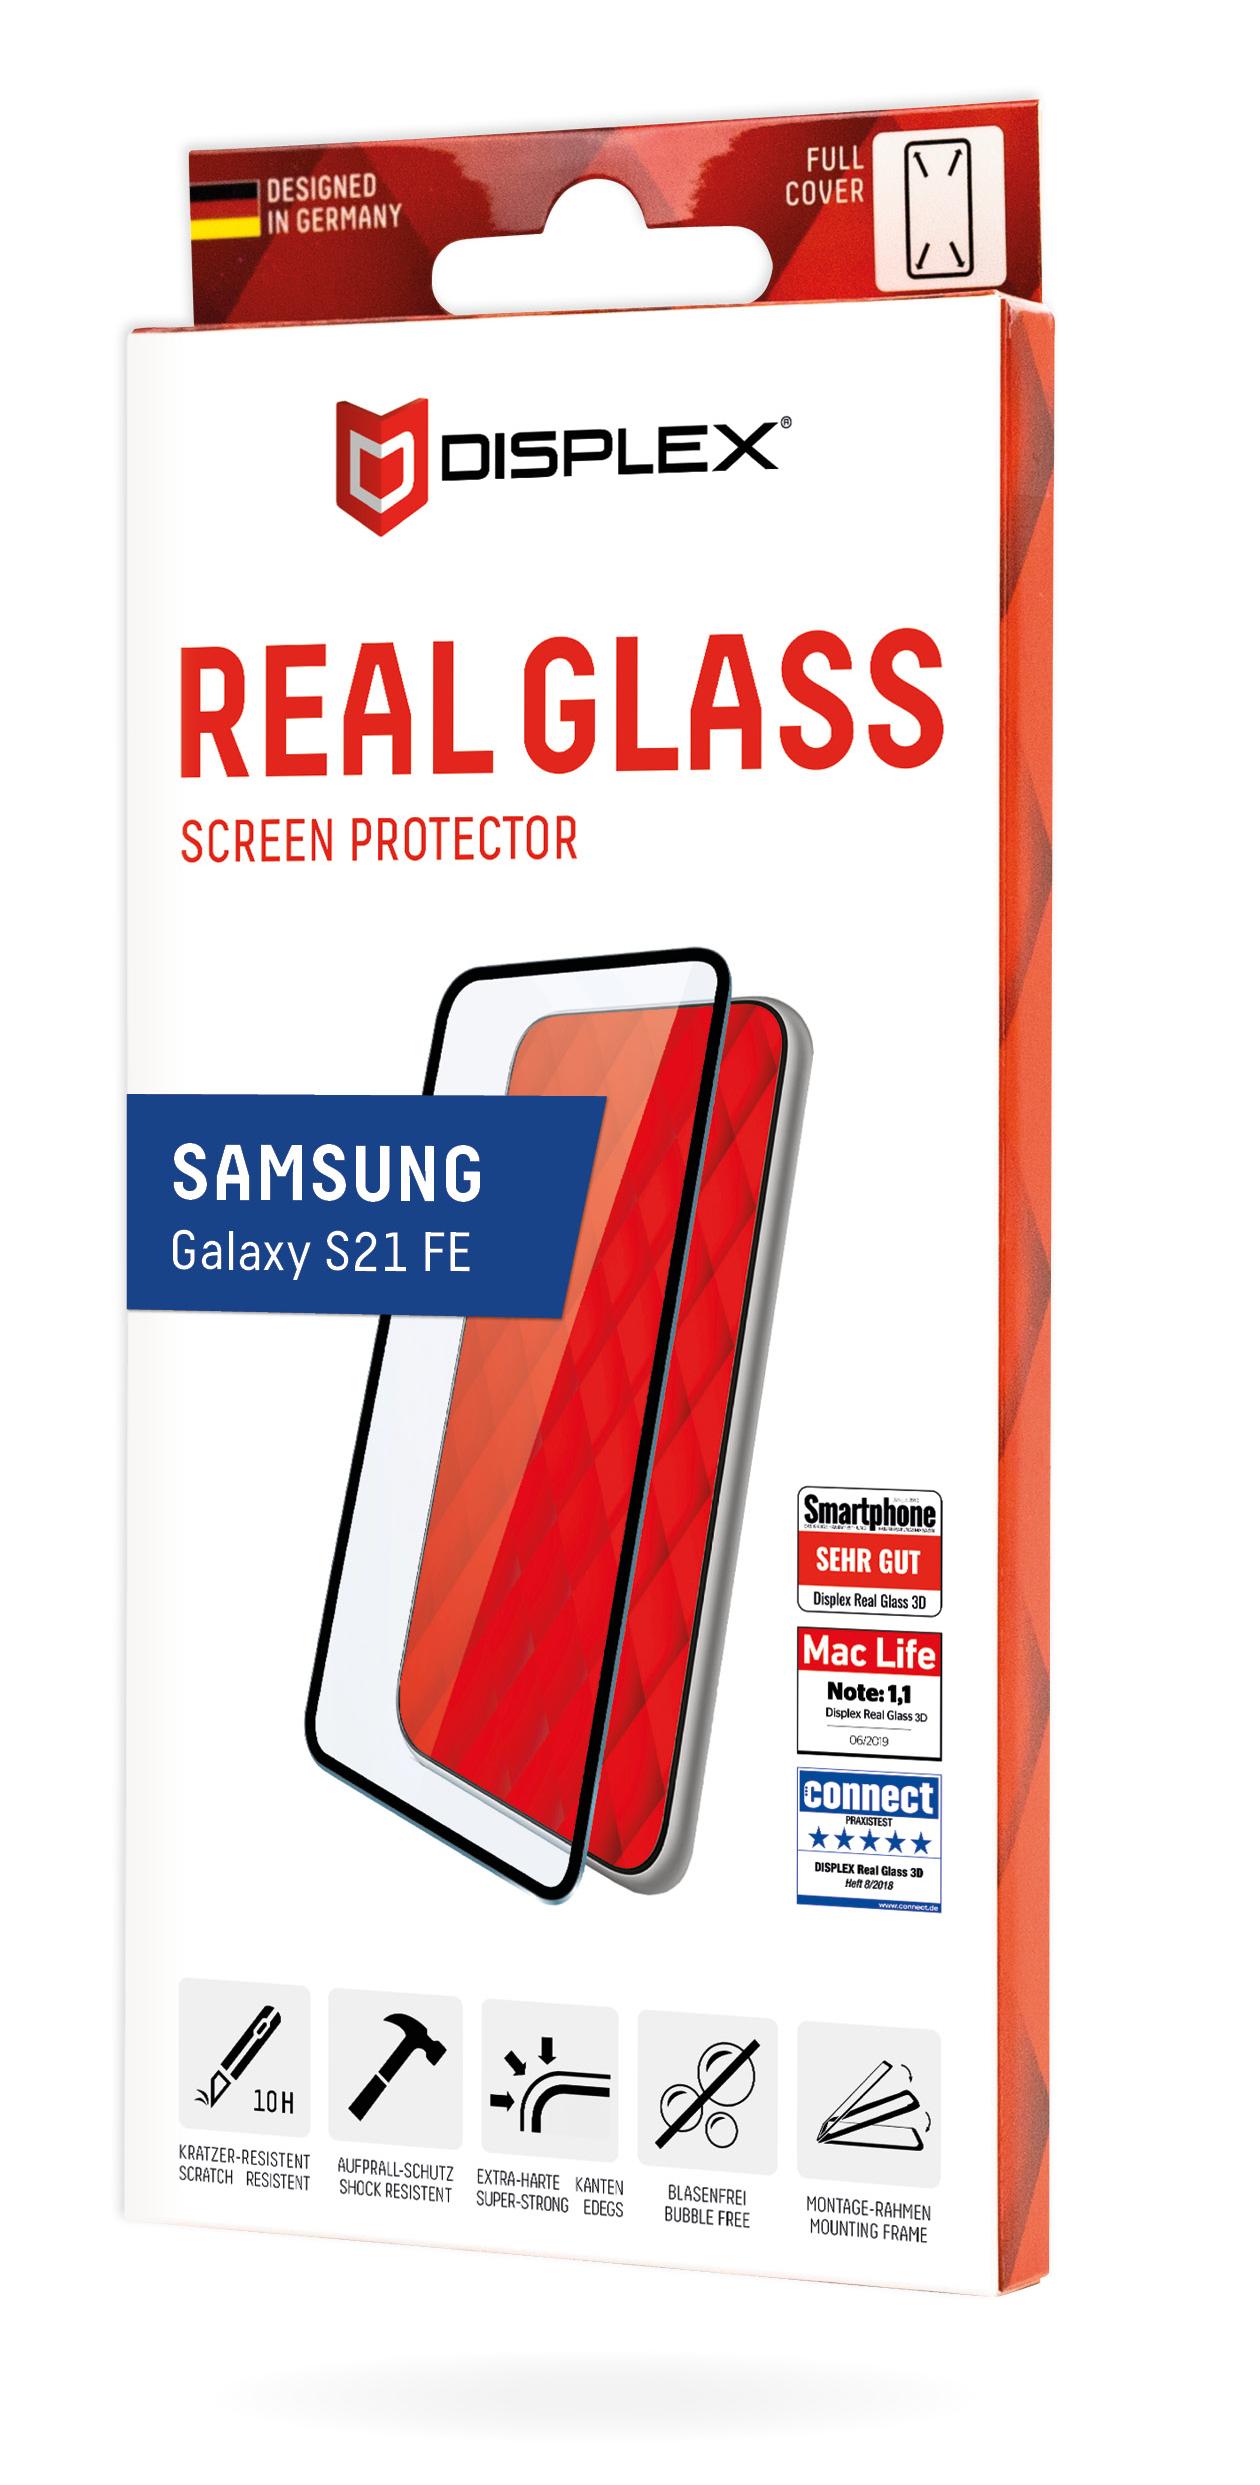 Displex Dispalyschutzglasfolie Real Glass 3D für Samsung G990B Galaxy S21 FE